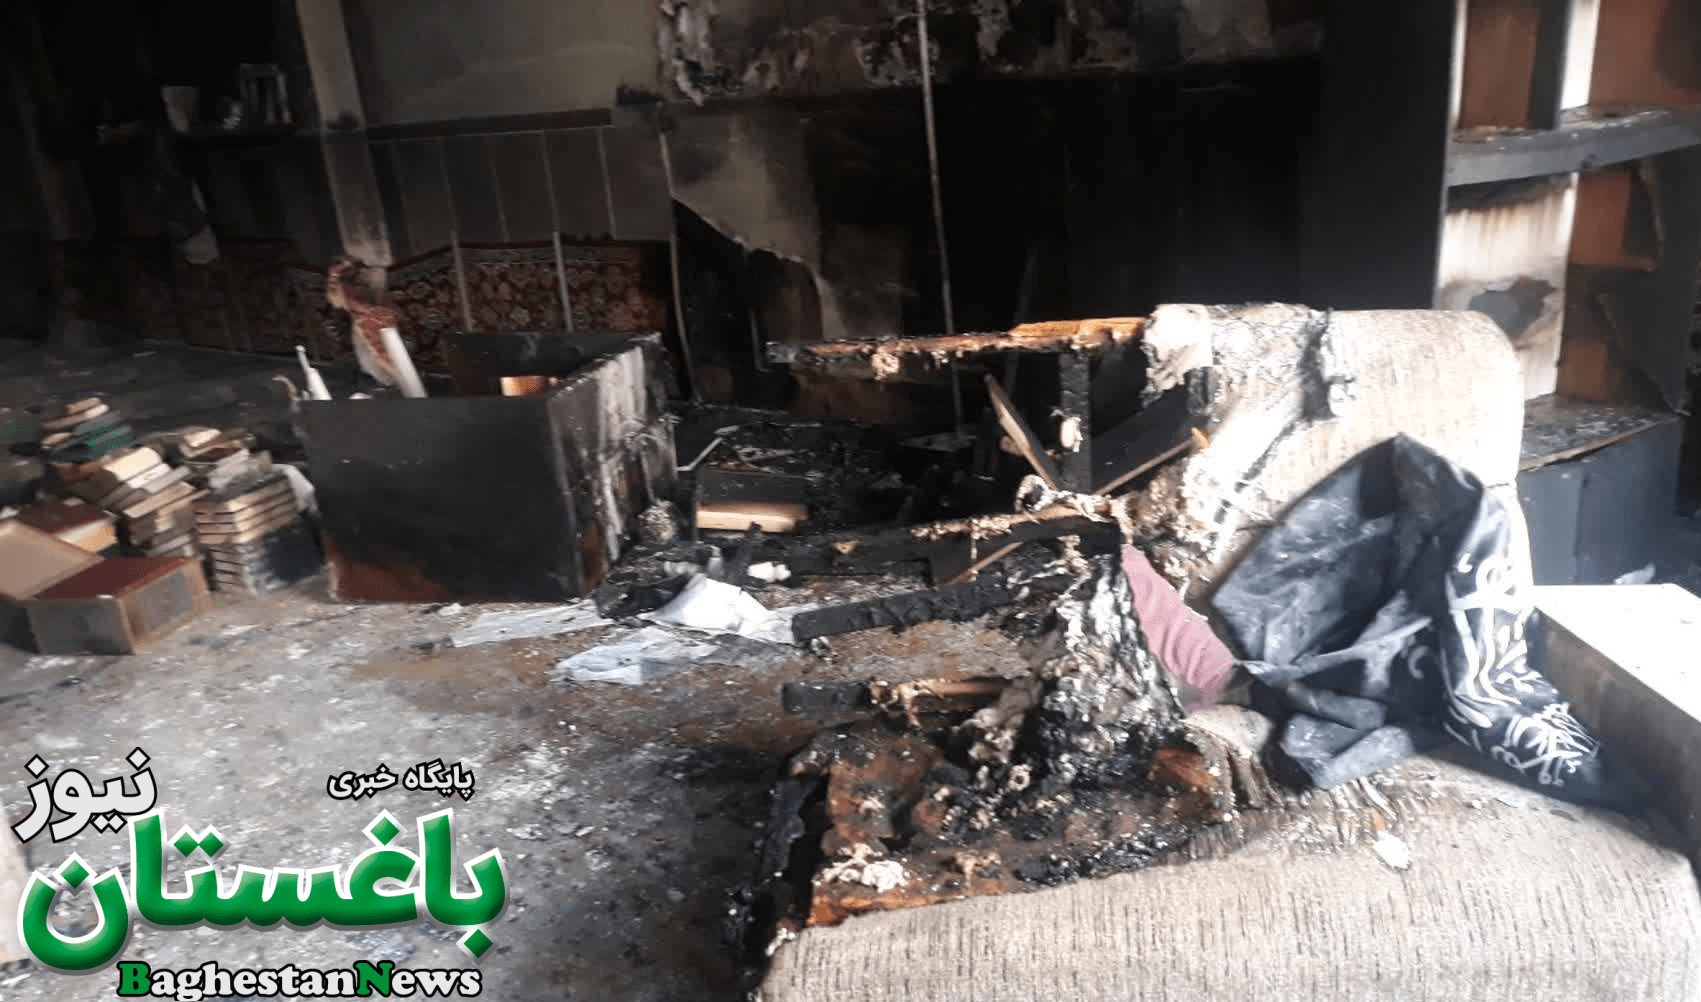 دانلود فیلم و کلیپ حمله به مسجد ابوذر و آتش زدن آن توسط اغتشاشگران3